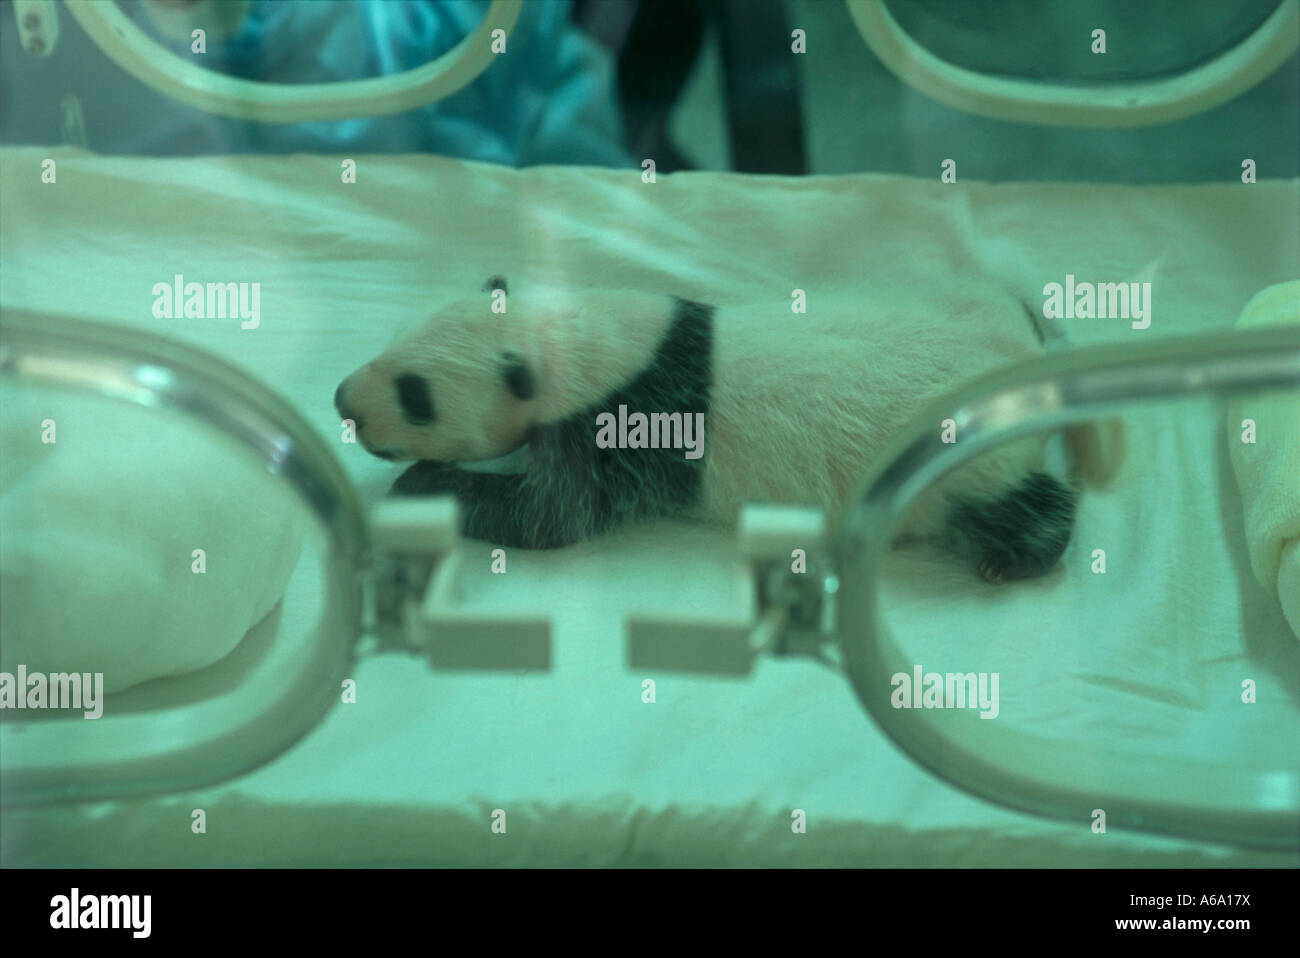 China, Shanghai, Chengdu, réserve naturelle de Wolong, Centre de recherche de reproduction du Panda Géant, trois semaine panda cub,incubator Banque D'Images